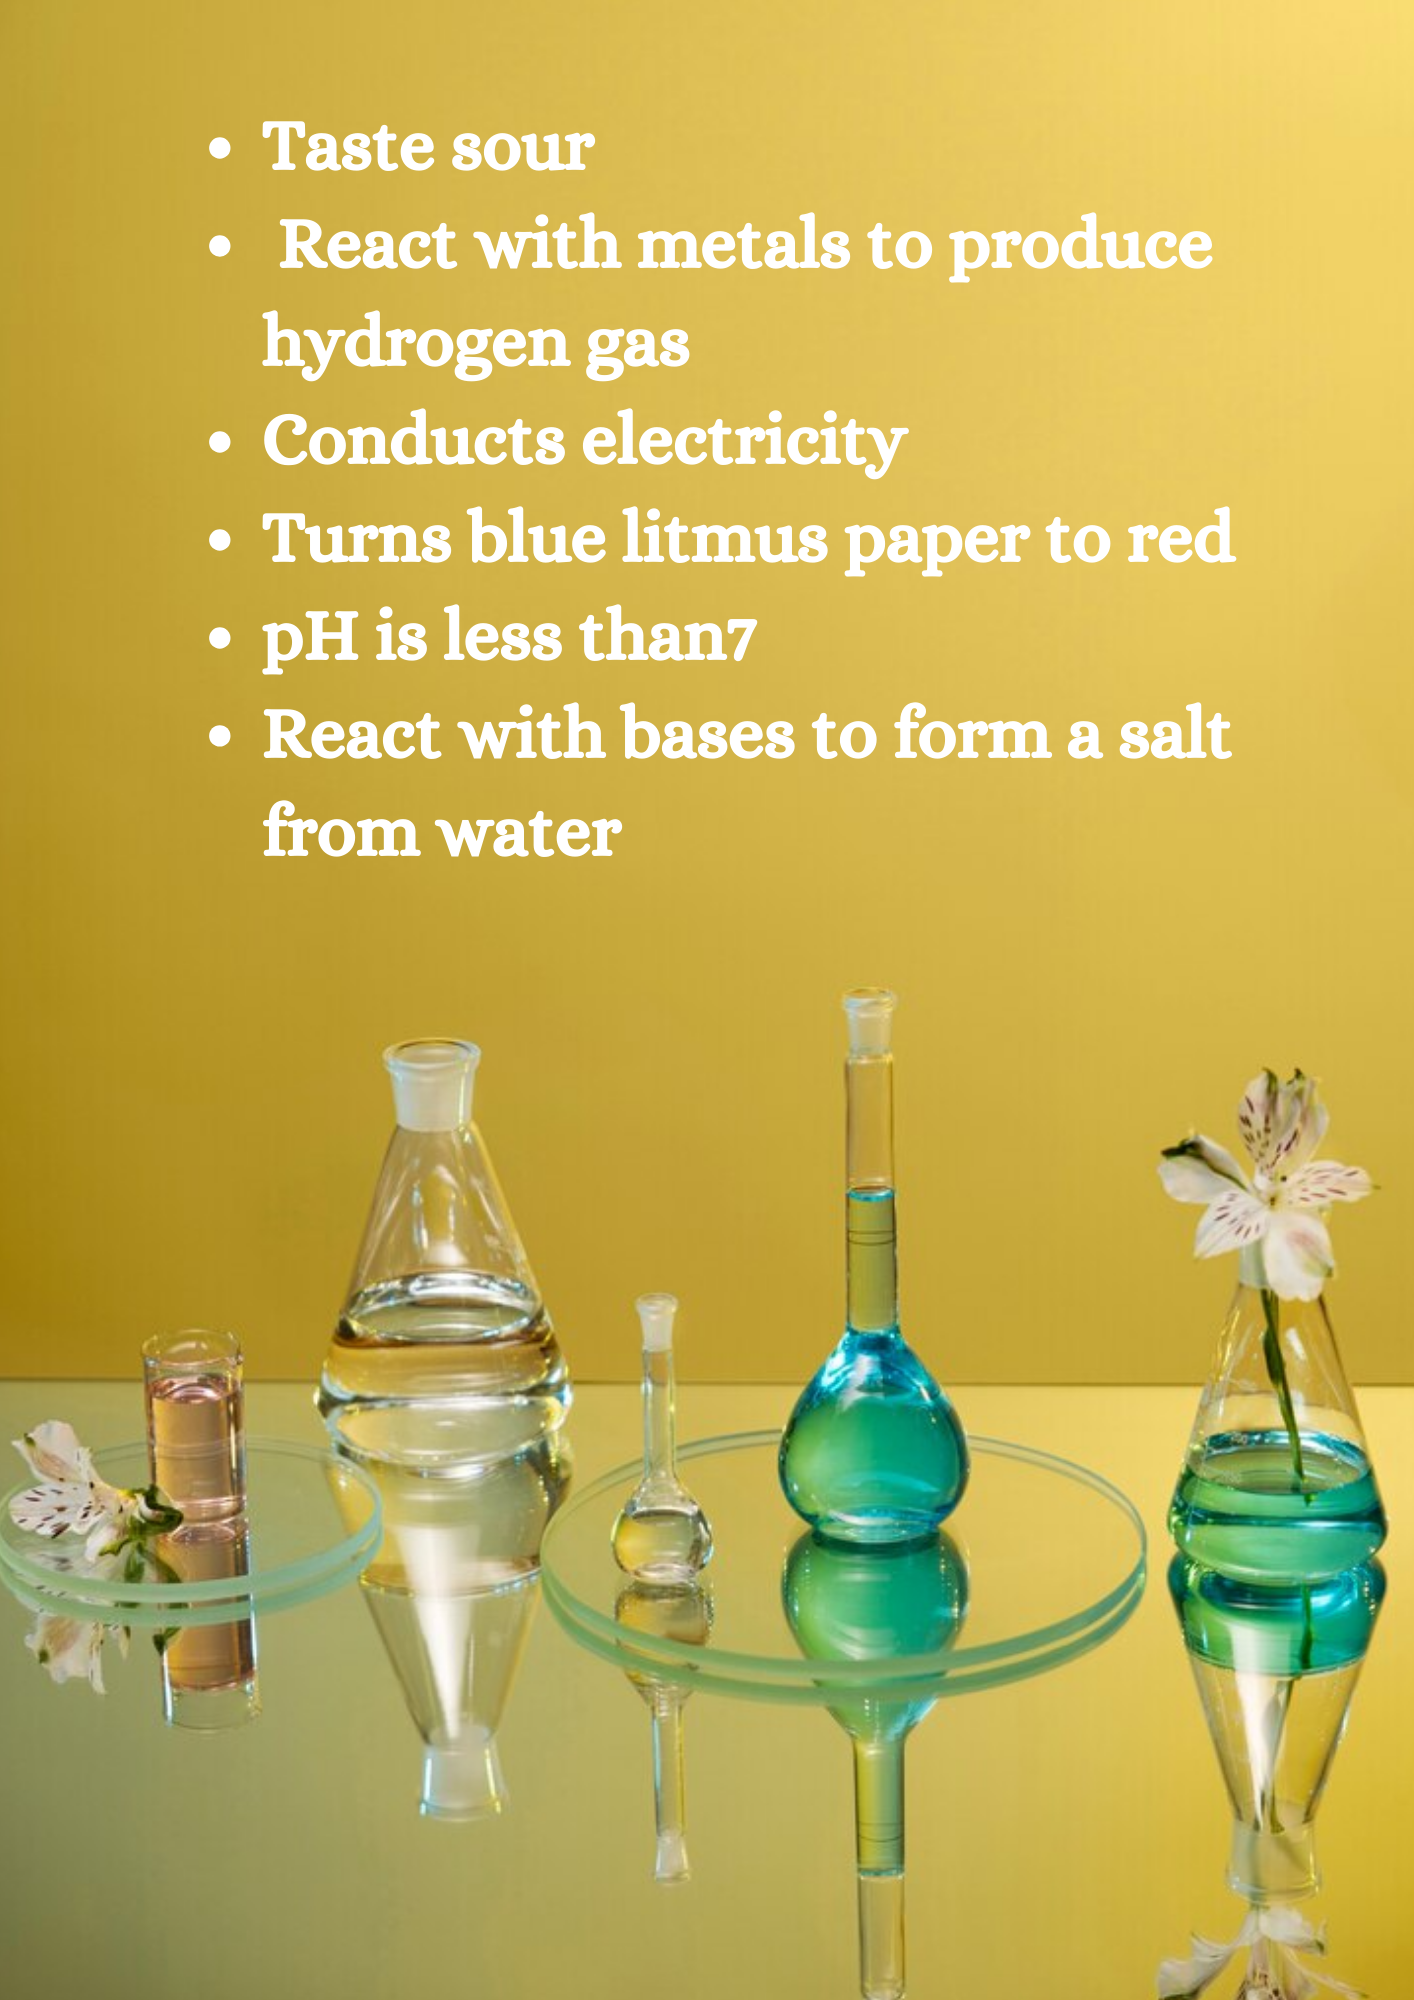 General characteristics of acids